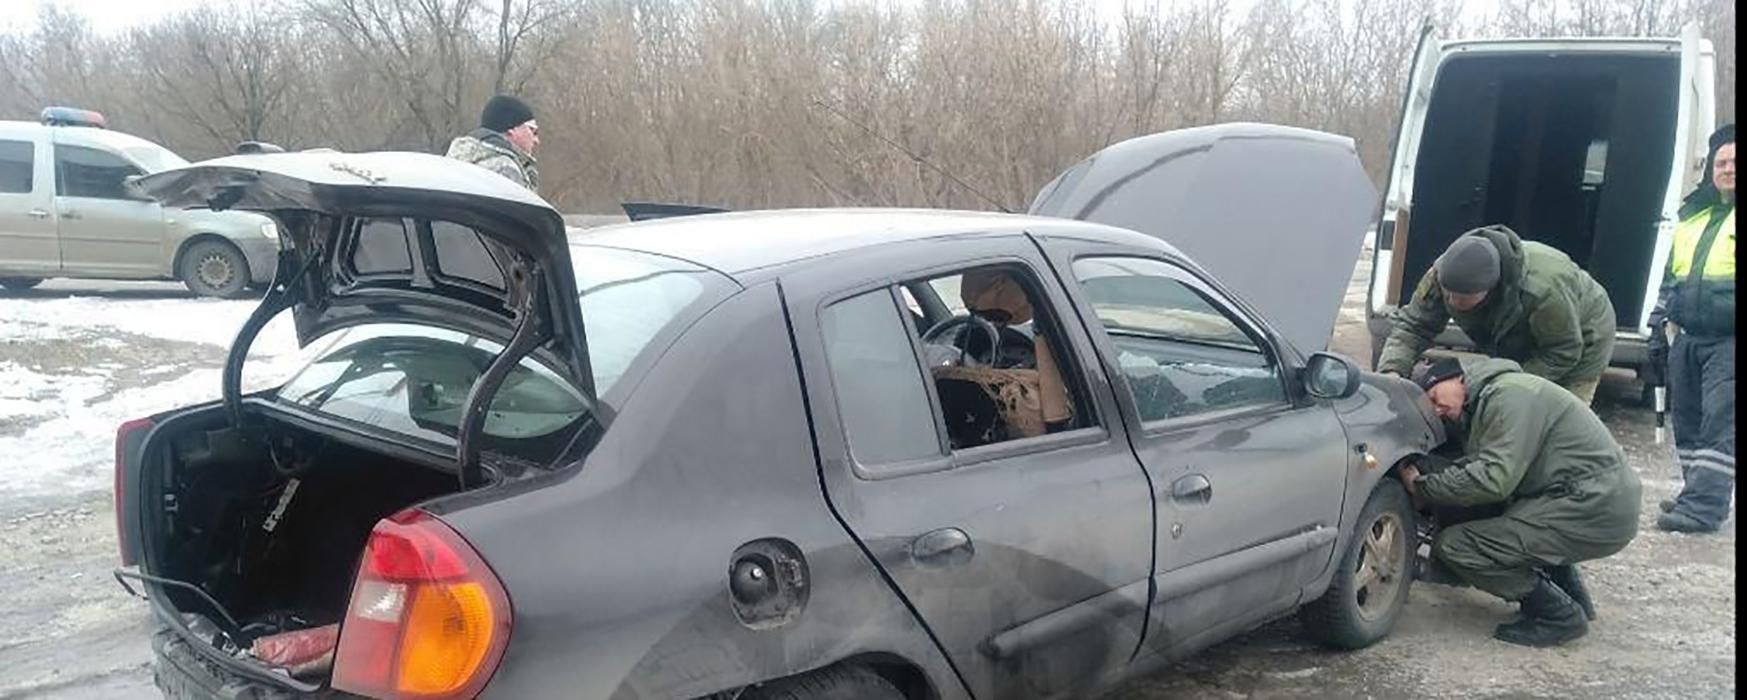 Ще одна спроба ліквідації: в окупованій Макіївці підірвали авто командира бойовиків, є фото